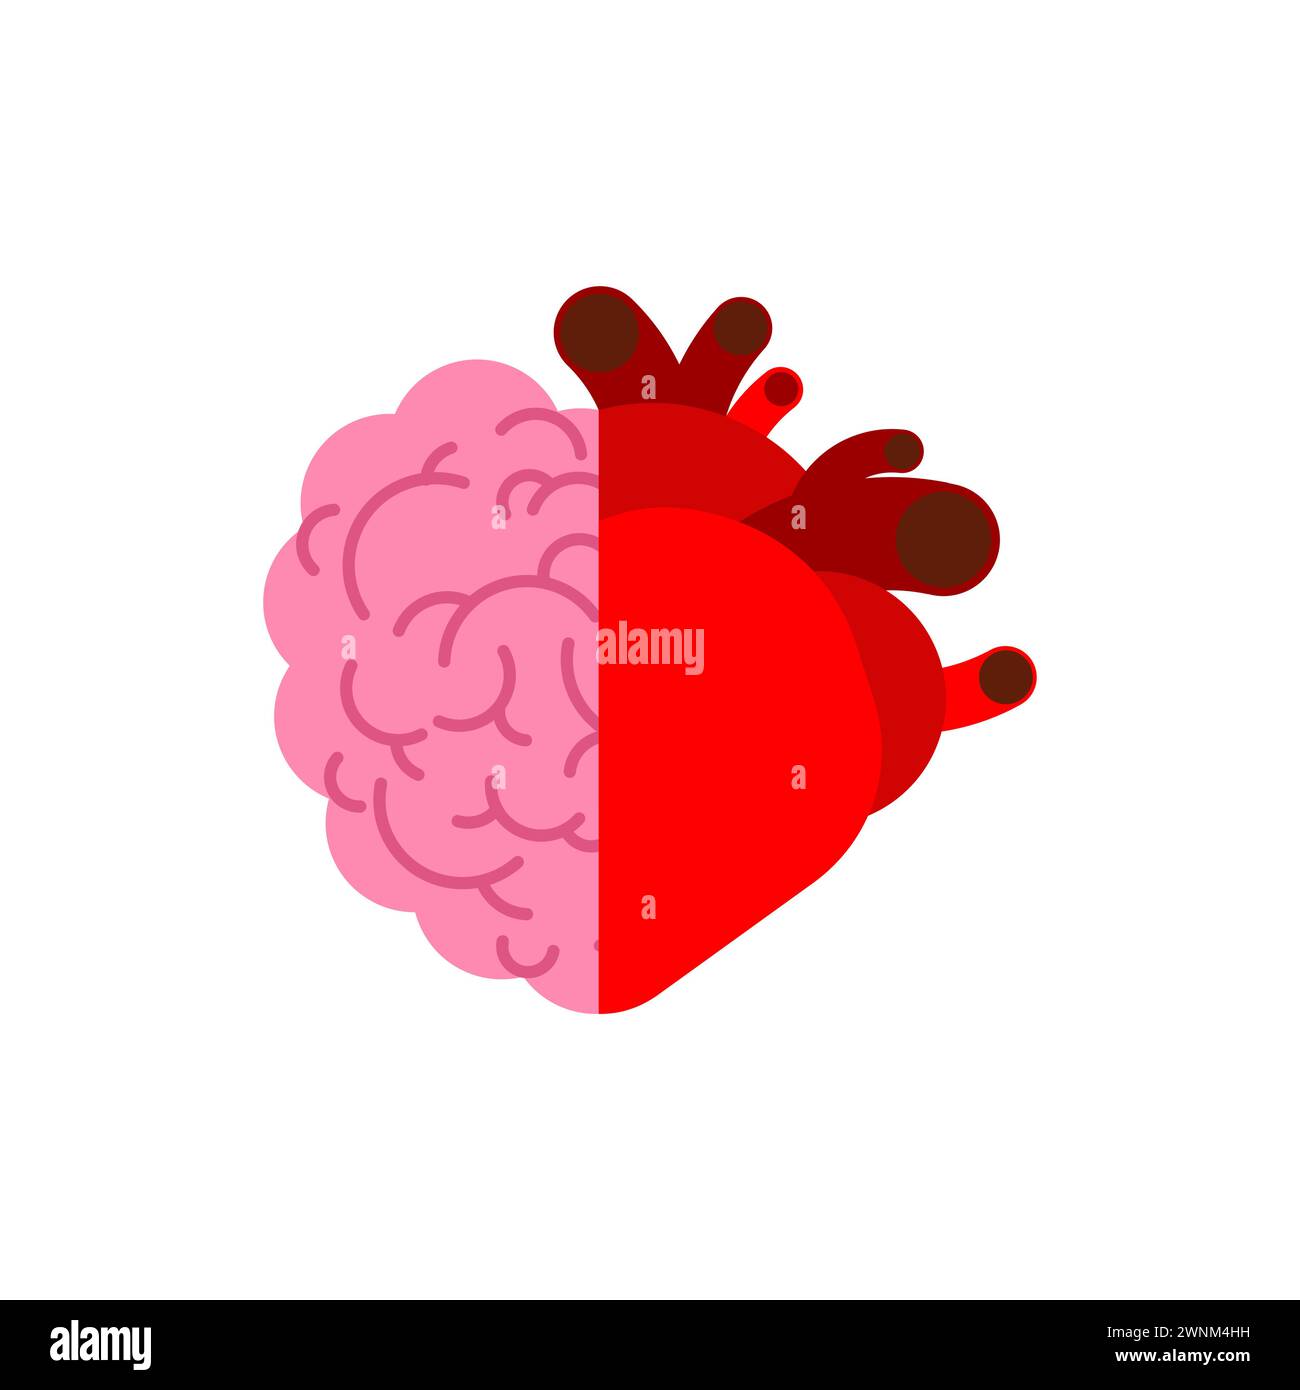 Halb Gehirn und halb Herz. Kombinieren Sie Gefühle und Vernunft. Stock Vektor